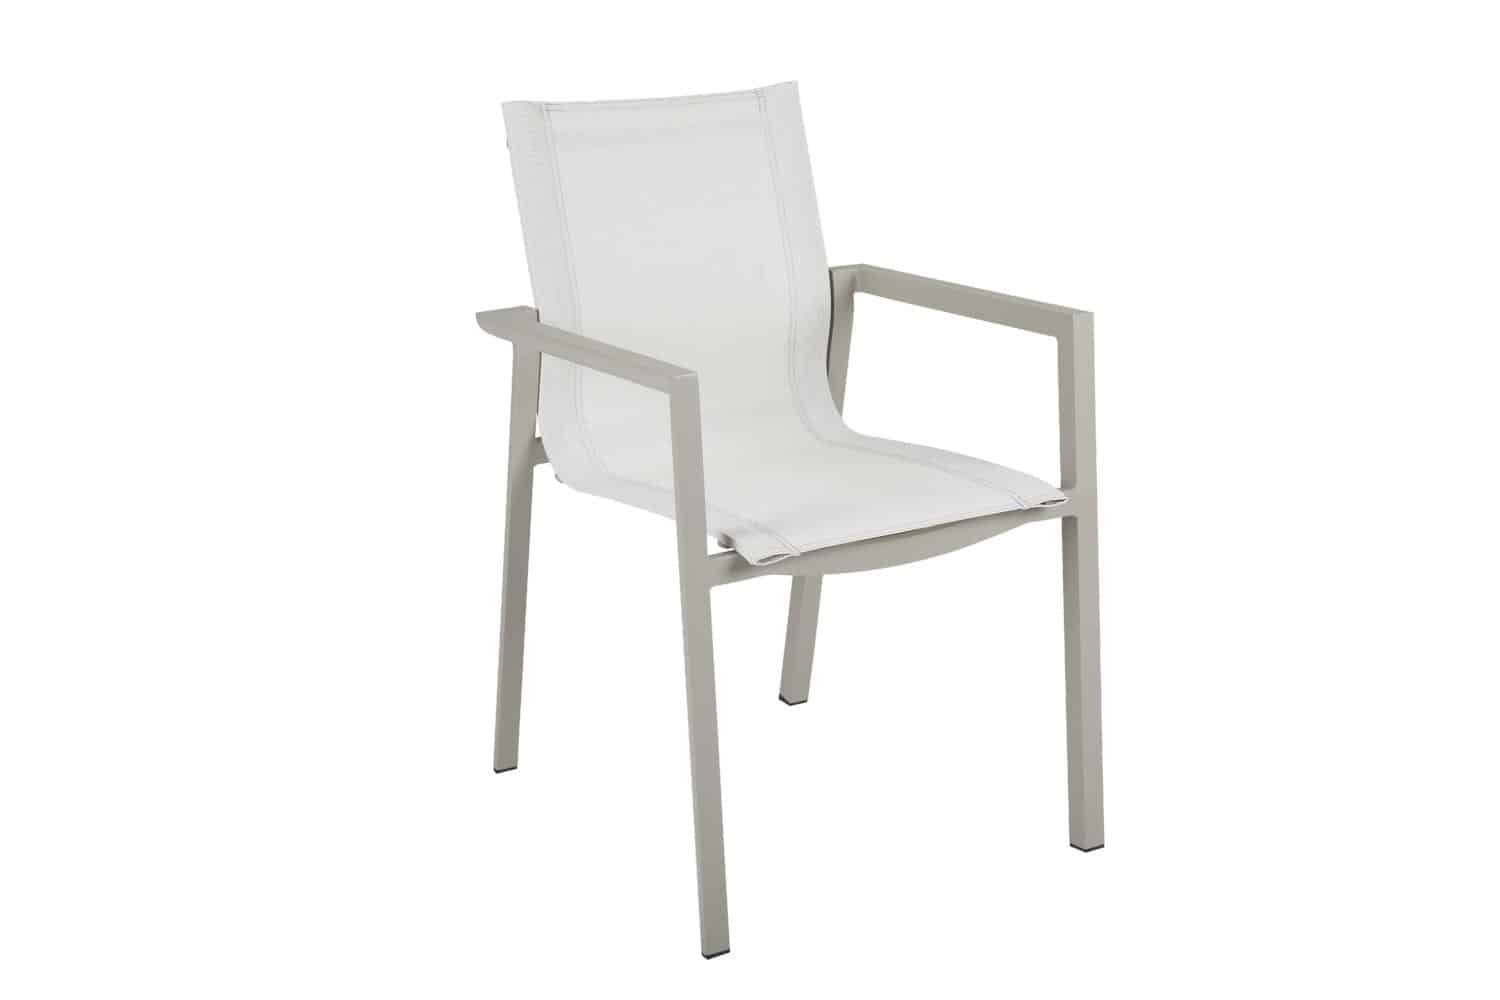 Brafab Delia Karmstol khaki är en stapelbar matstol i khaki/beigefärgad aluminium och off white textilene.